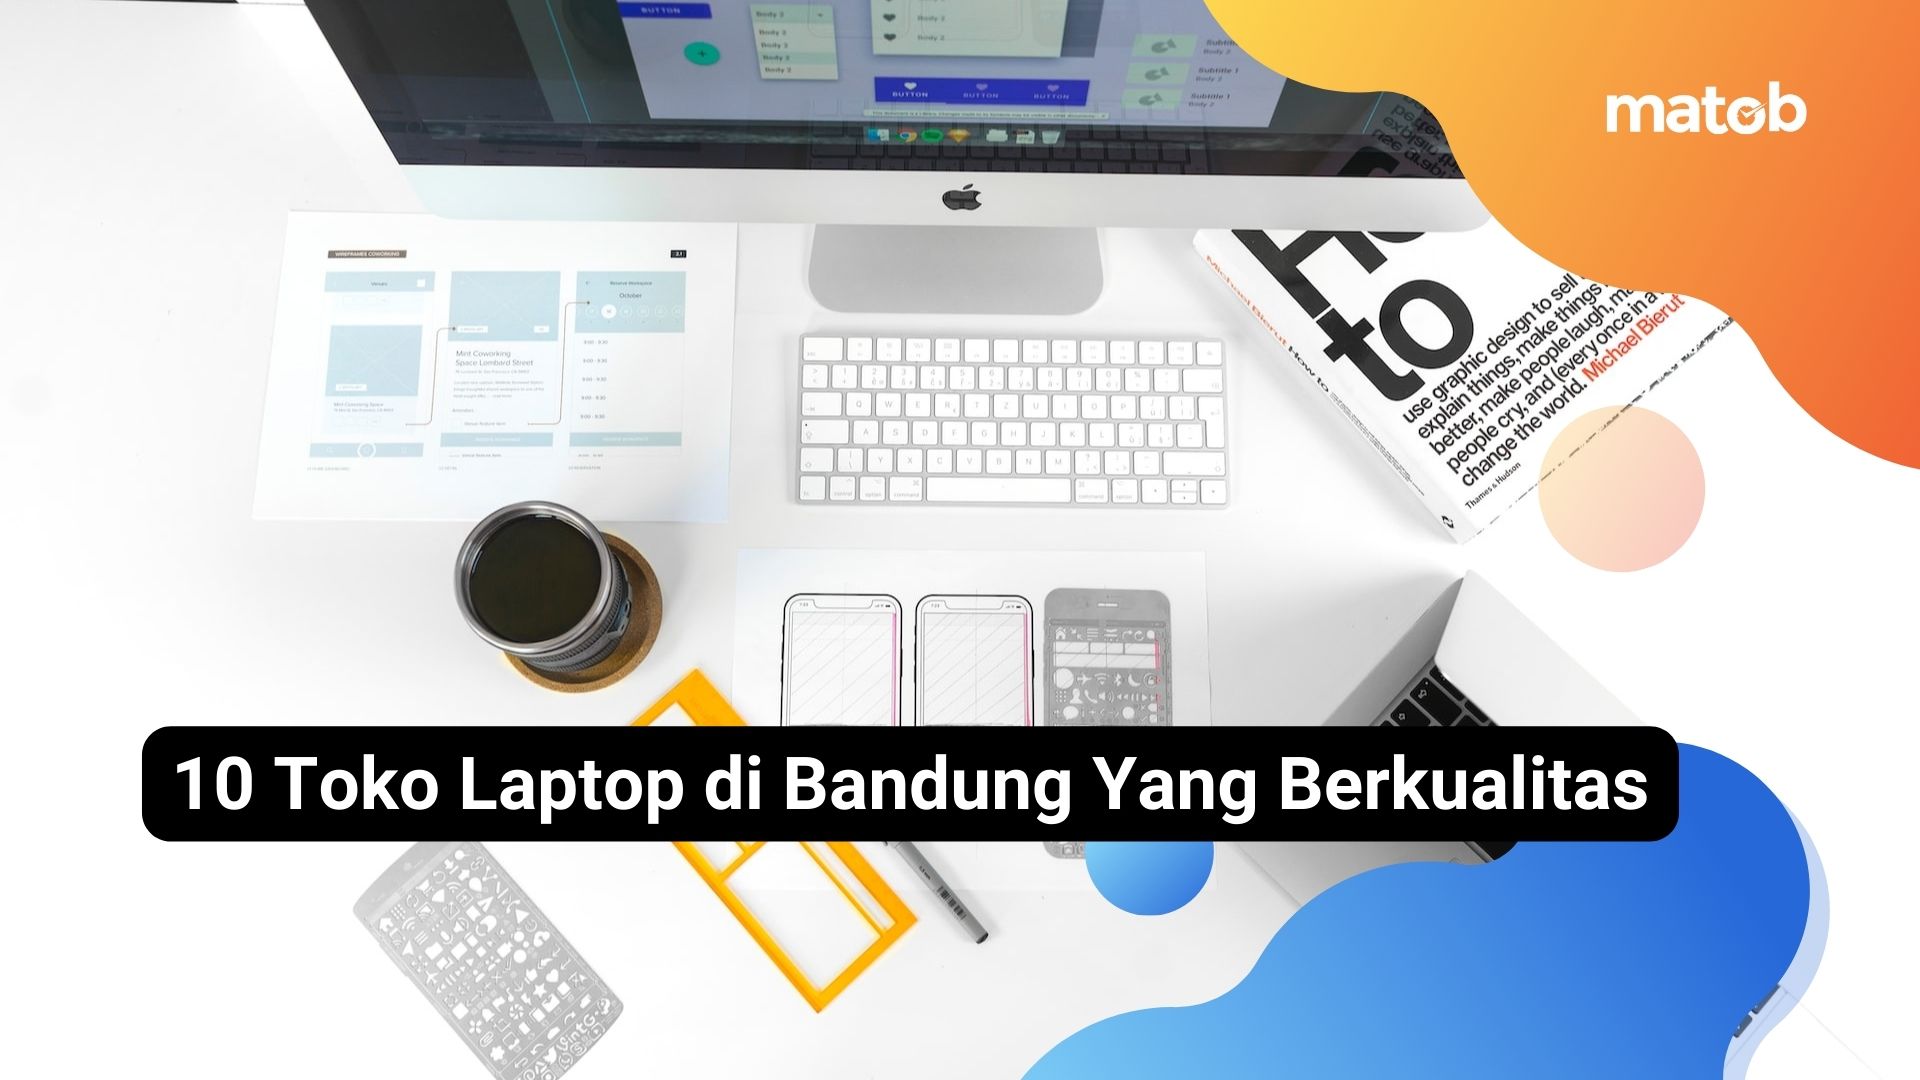 10 Toko Laptop di Bandung Yang Berkualitas